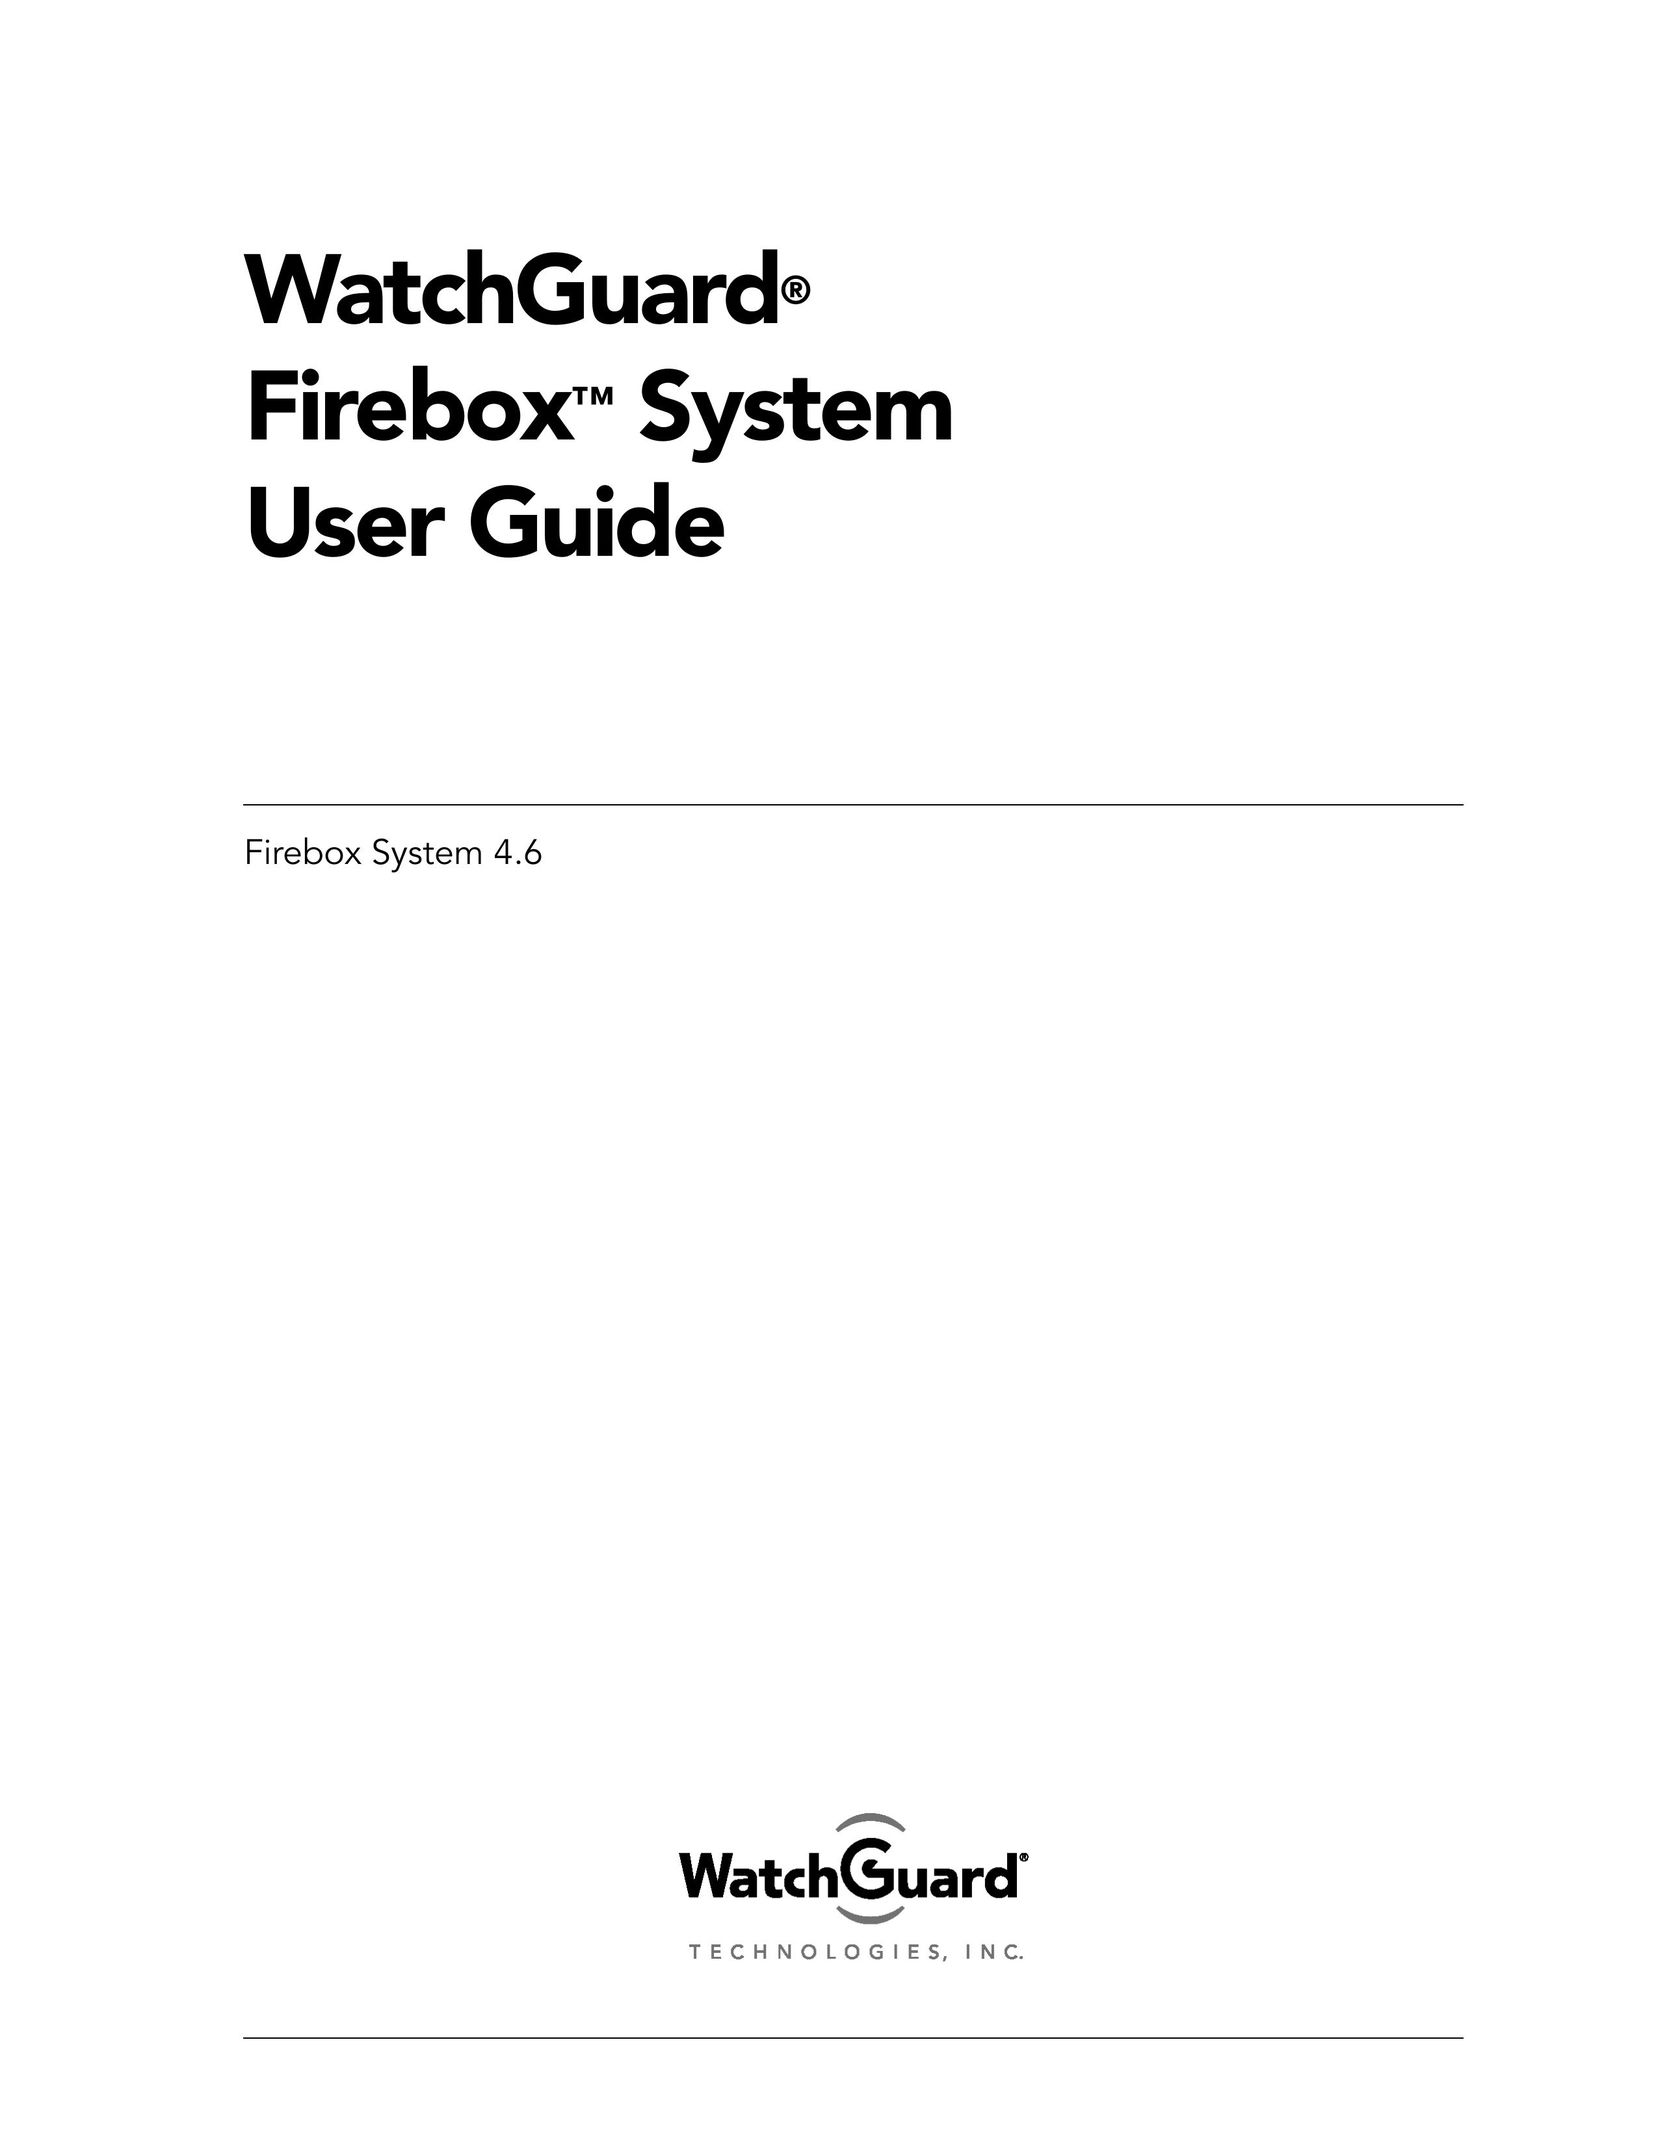 WatchGuard Technologies FireboxTM System 4.6 Network Router User Manual